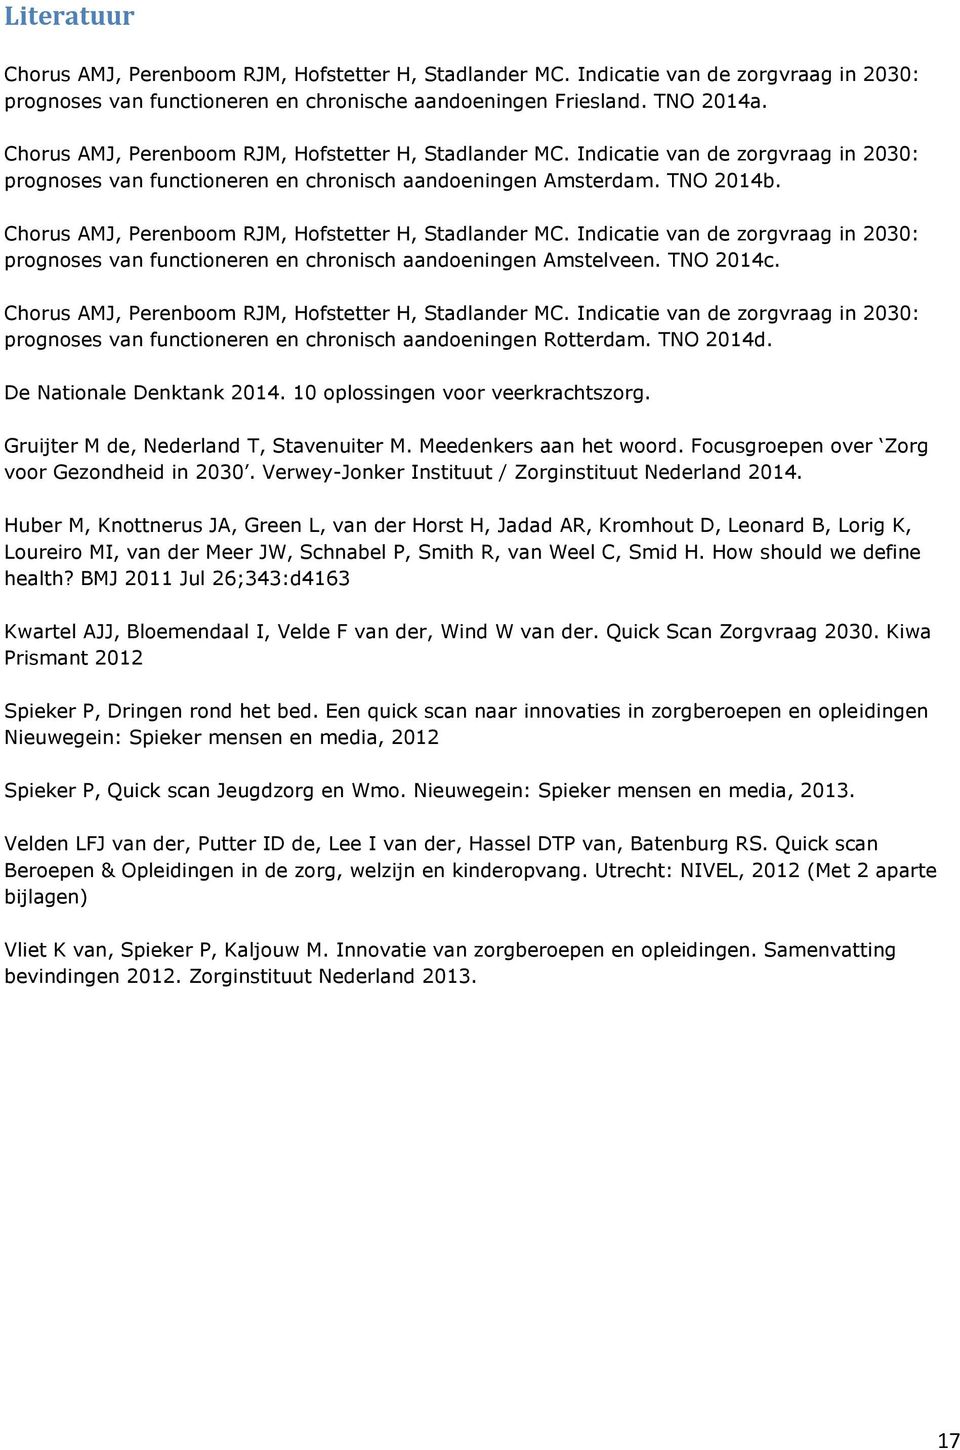 Chorus AMJ, Perenboom RJM, Hofstetter H, Stadlander MC. Indicatie van de zorgvraag in 2030: prognoses van functioneren en chronisch aandoeningen Amstelveen. TNO 2014c.